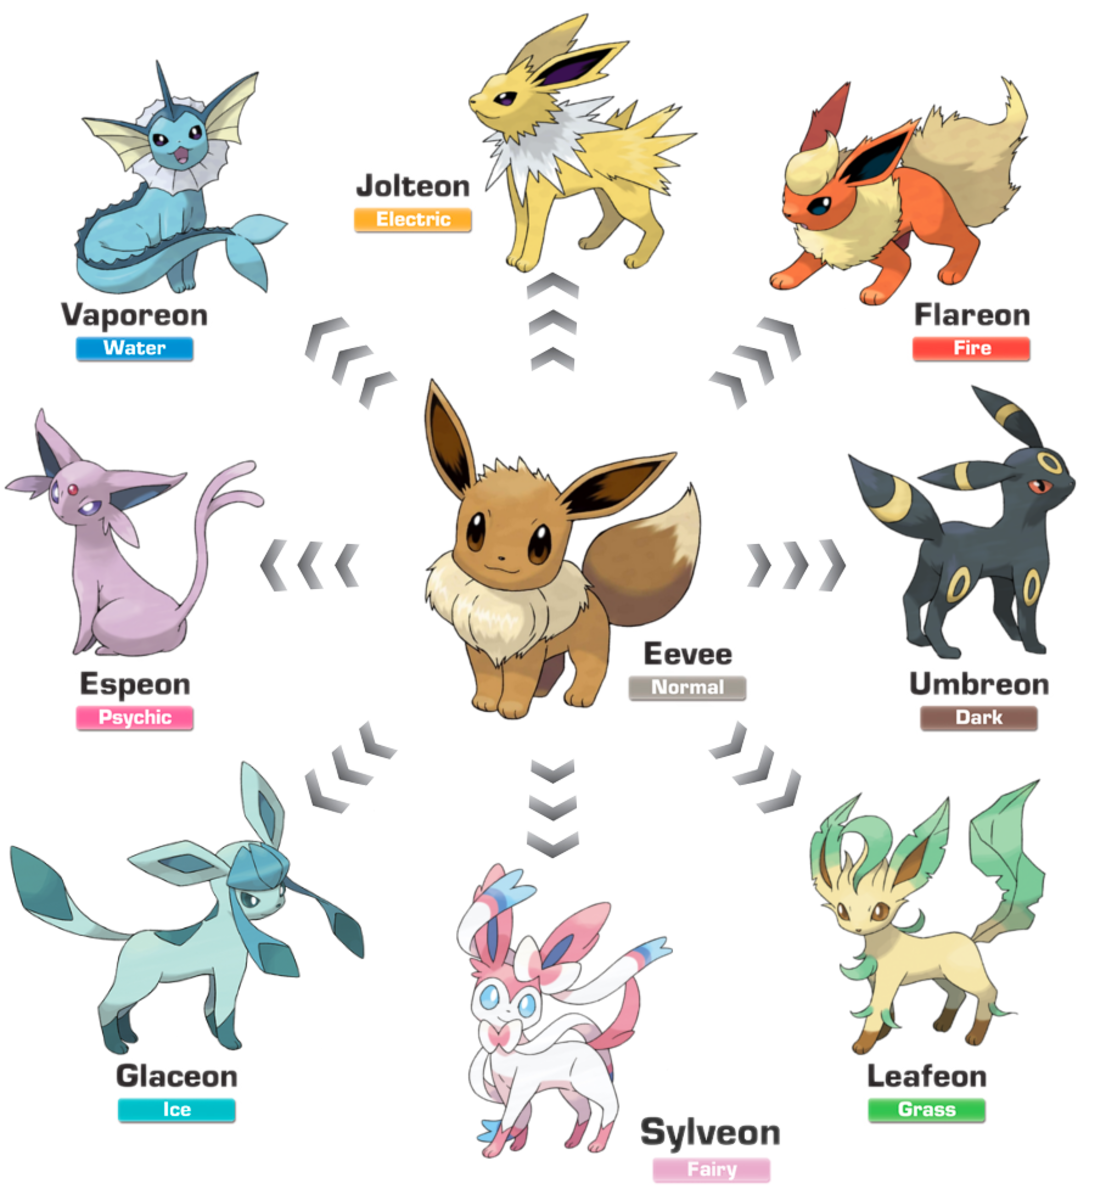 Top 8 Eevee Evolutions in "Pokémon" | LevelSkip